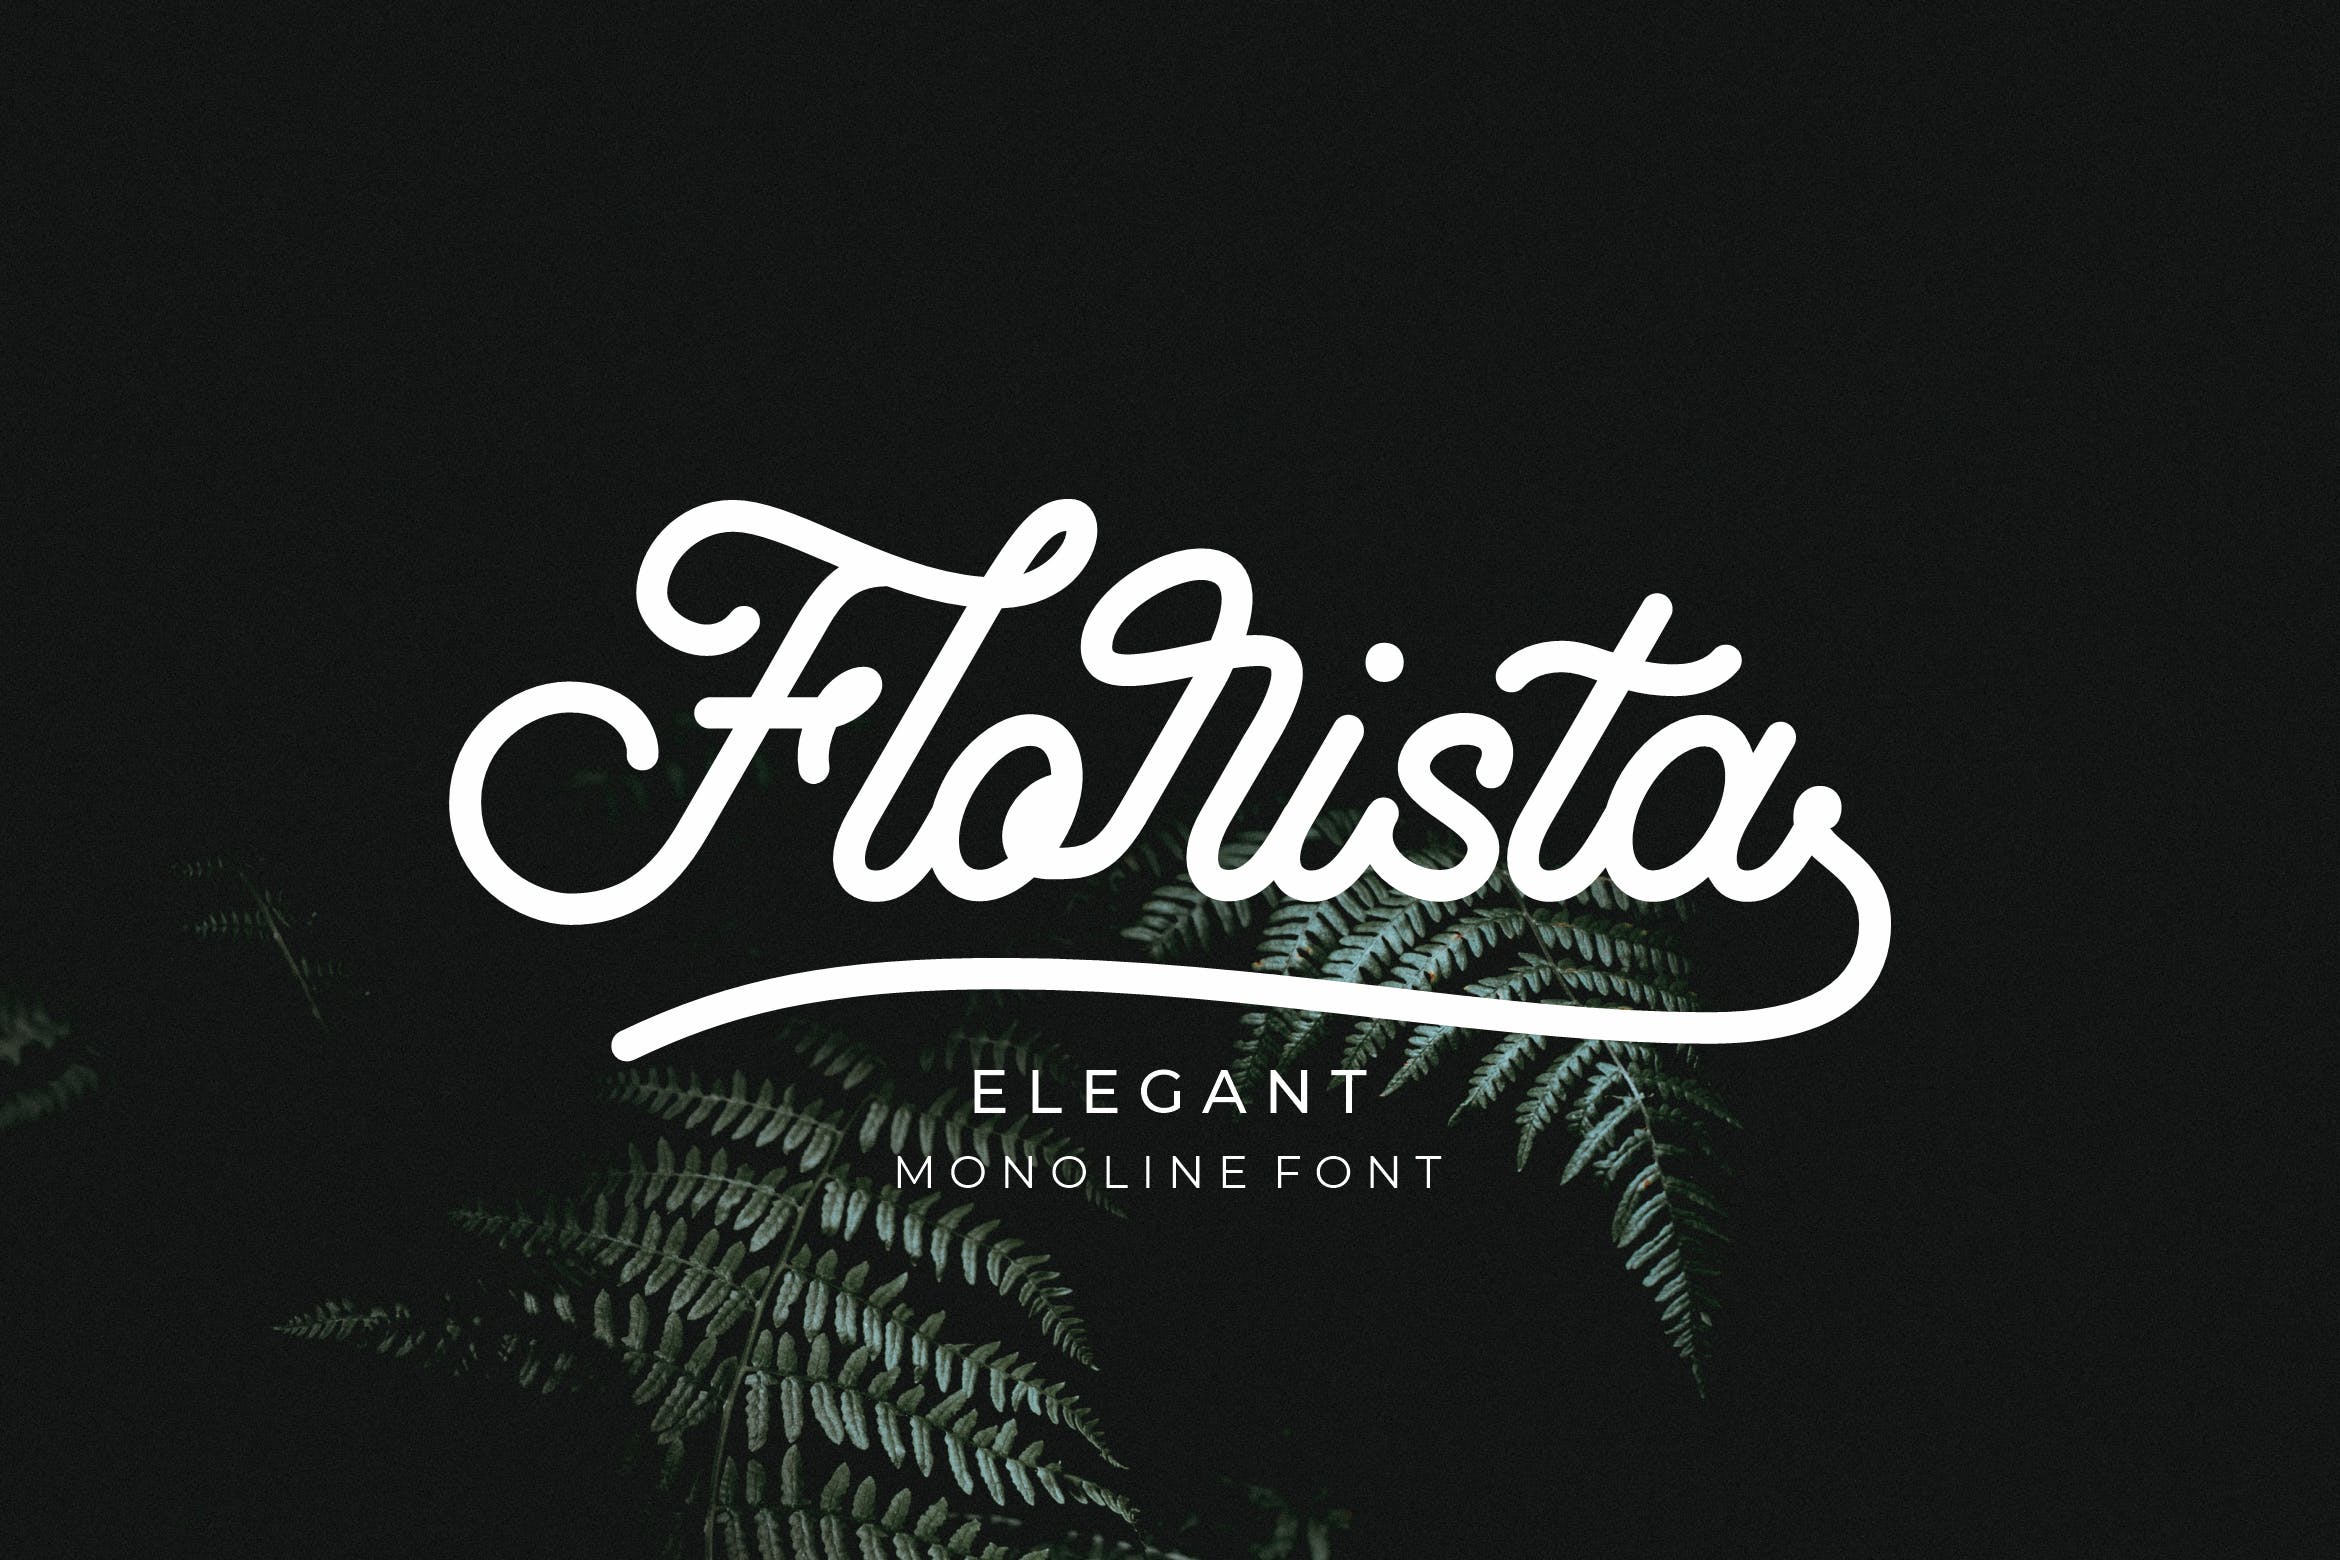 优雅圆滑可爱风格的monoline字体下载 Florista插图